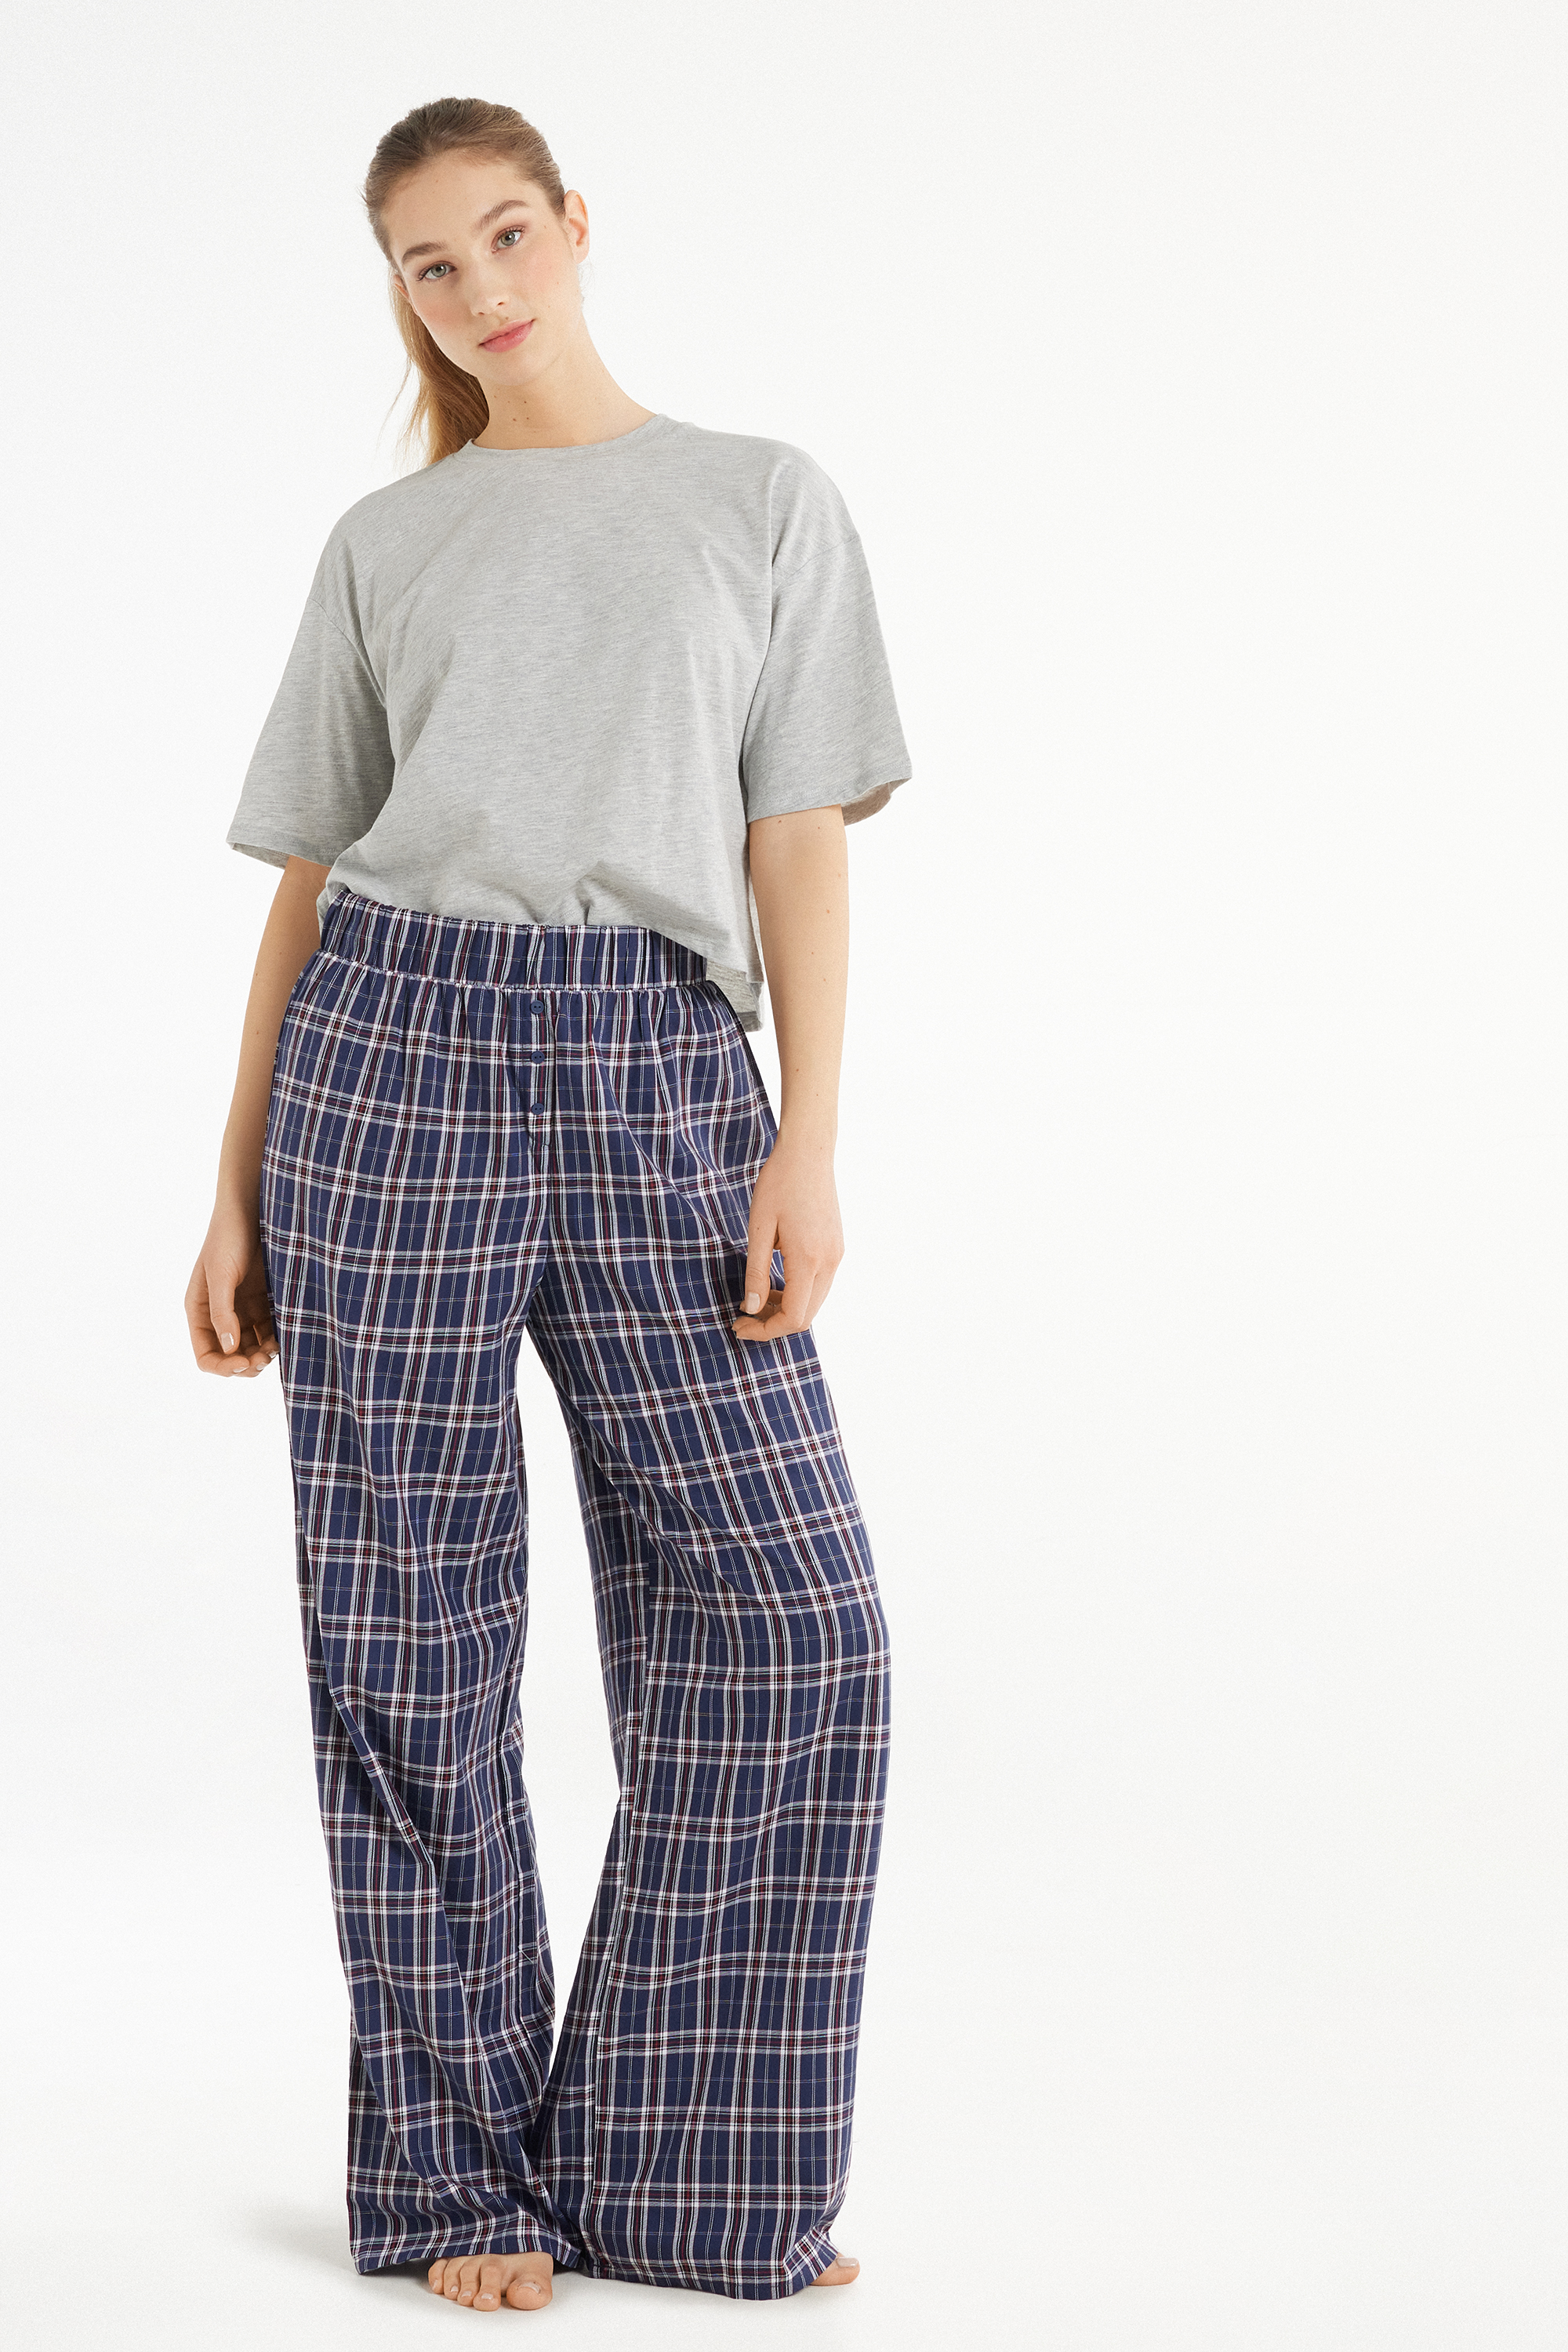 Pijama Meia Manga com Calças Compridas em Tecido